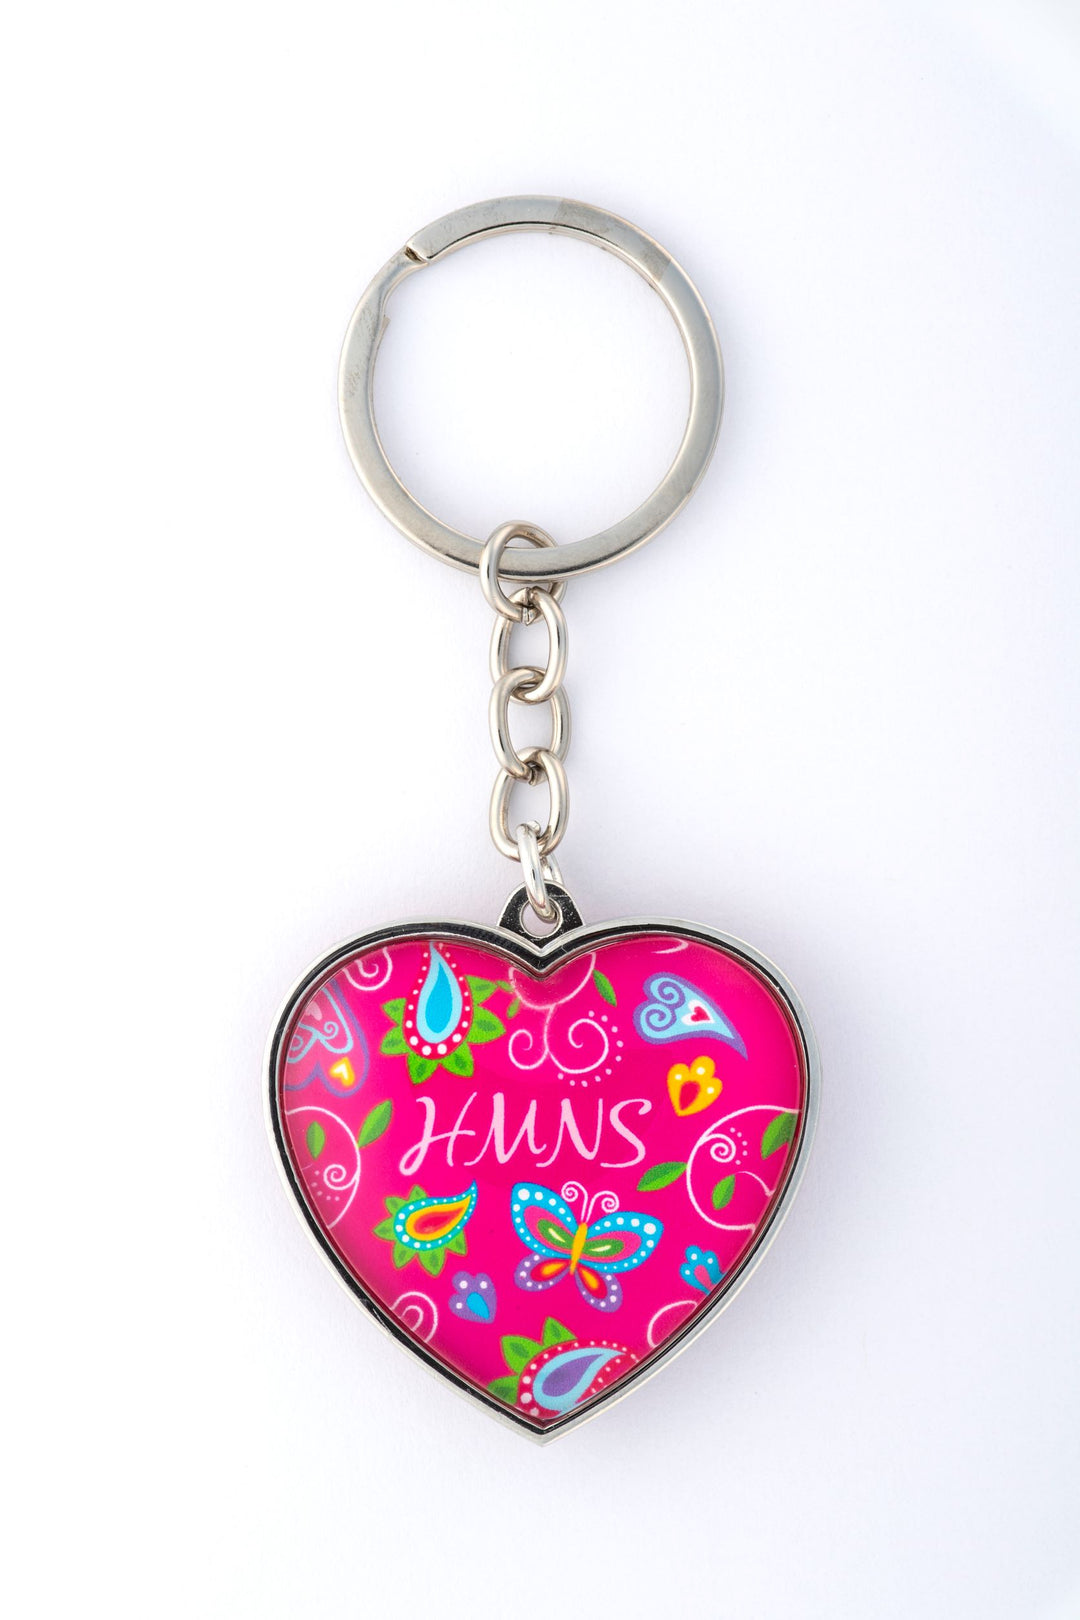 HMNS Heart Butterfly Keychain